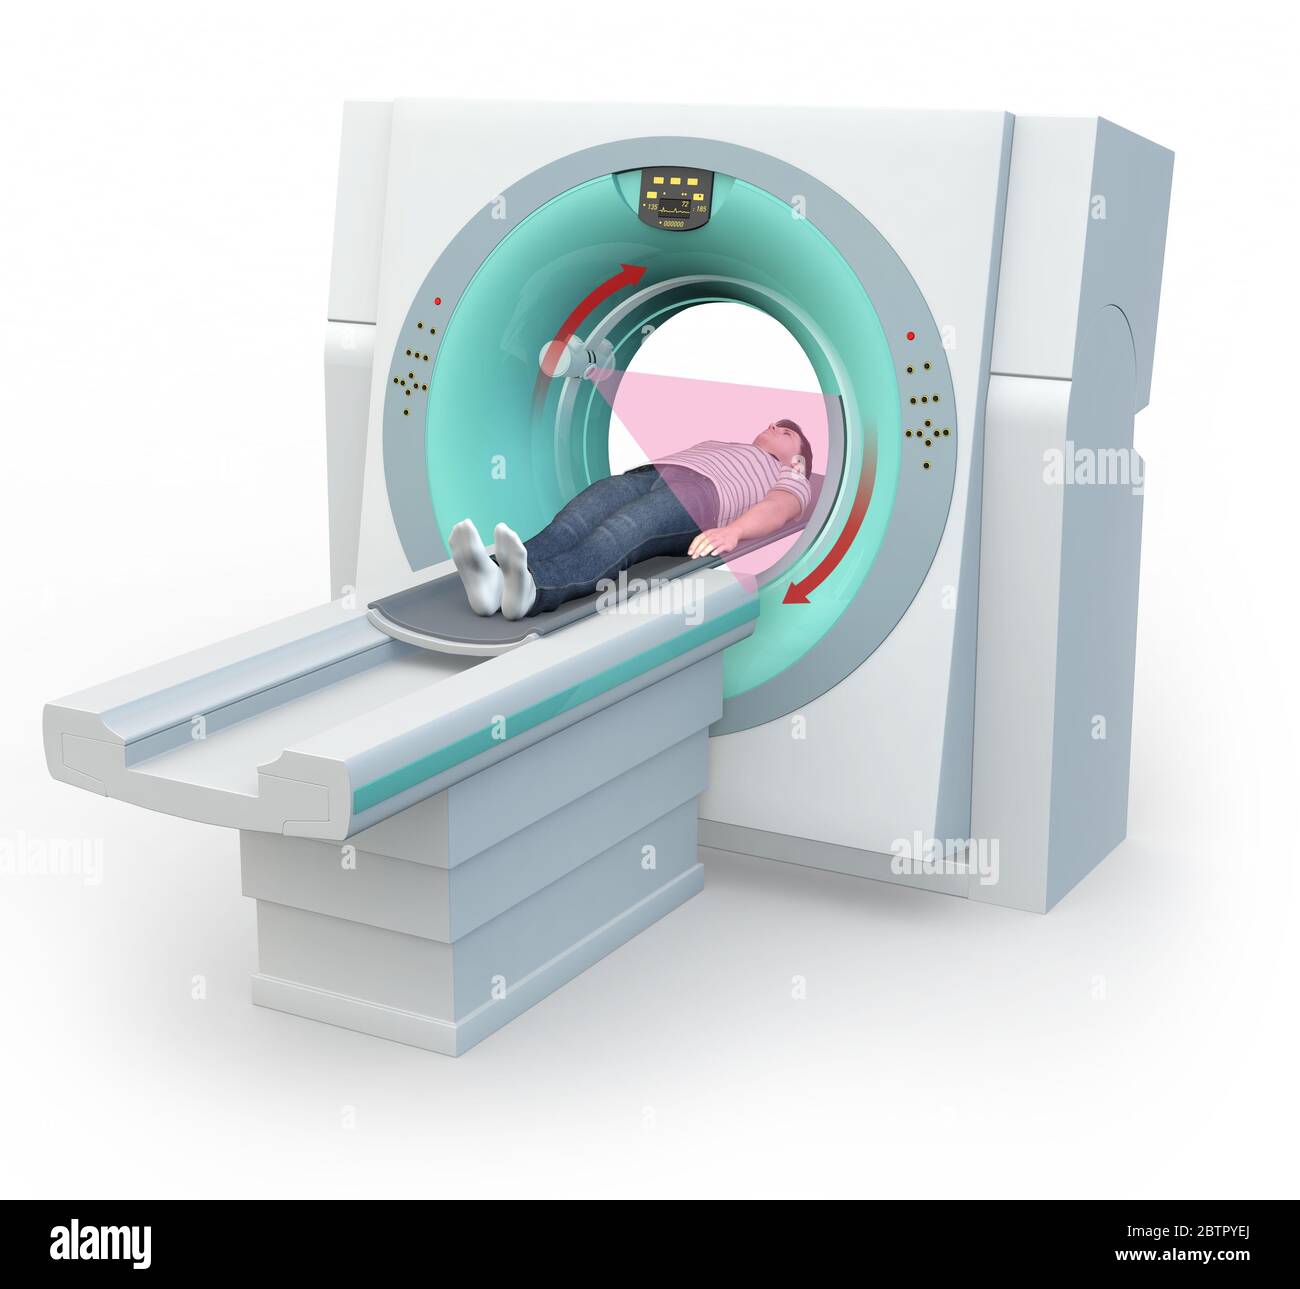 Illustrazione 3D medica che mostra un uomo in una macchina TC Foto Stock